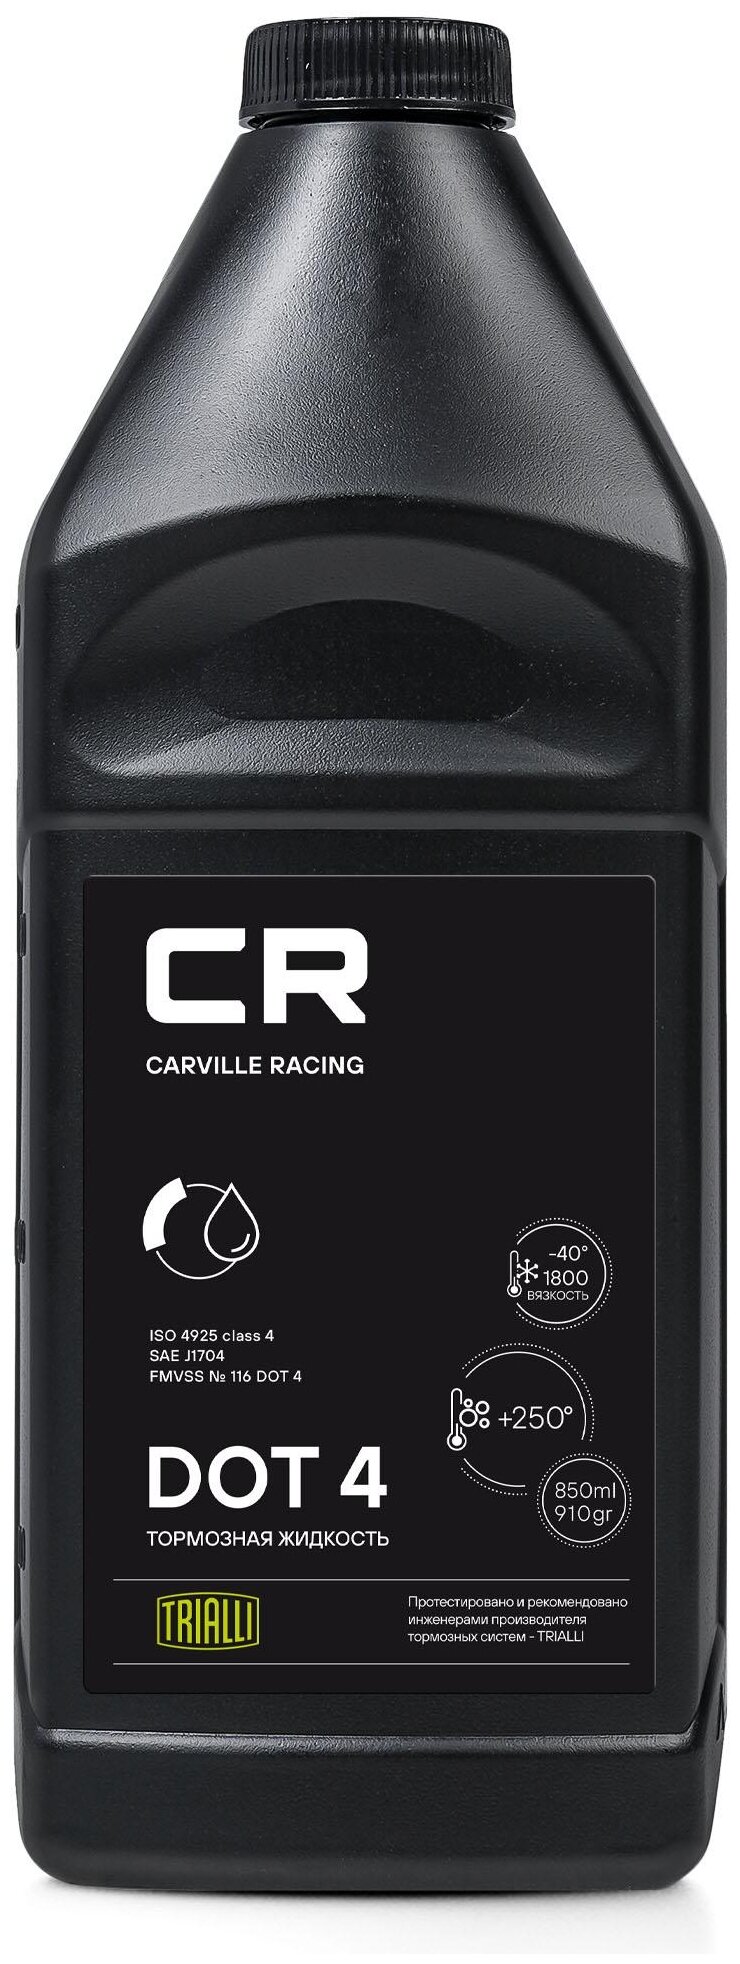 Тормозная жидкость CARVILLE RACING DOT 4